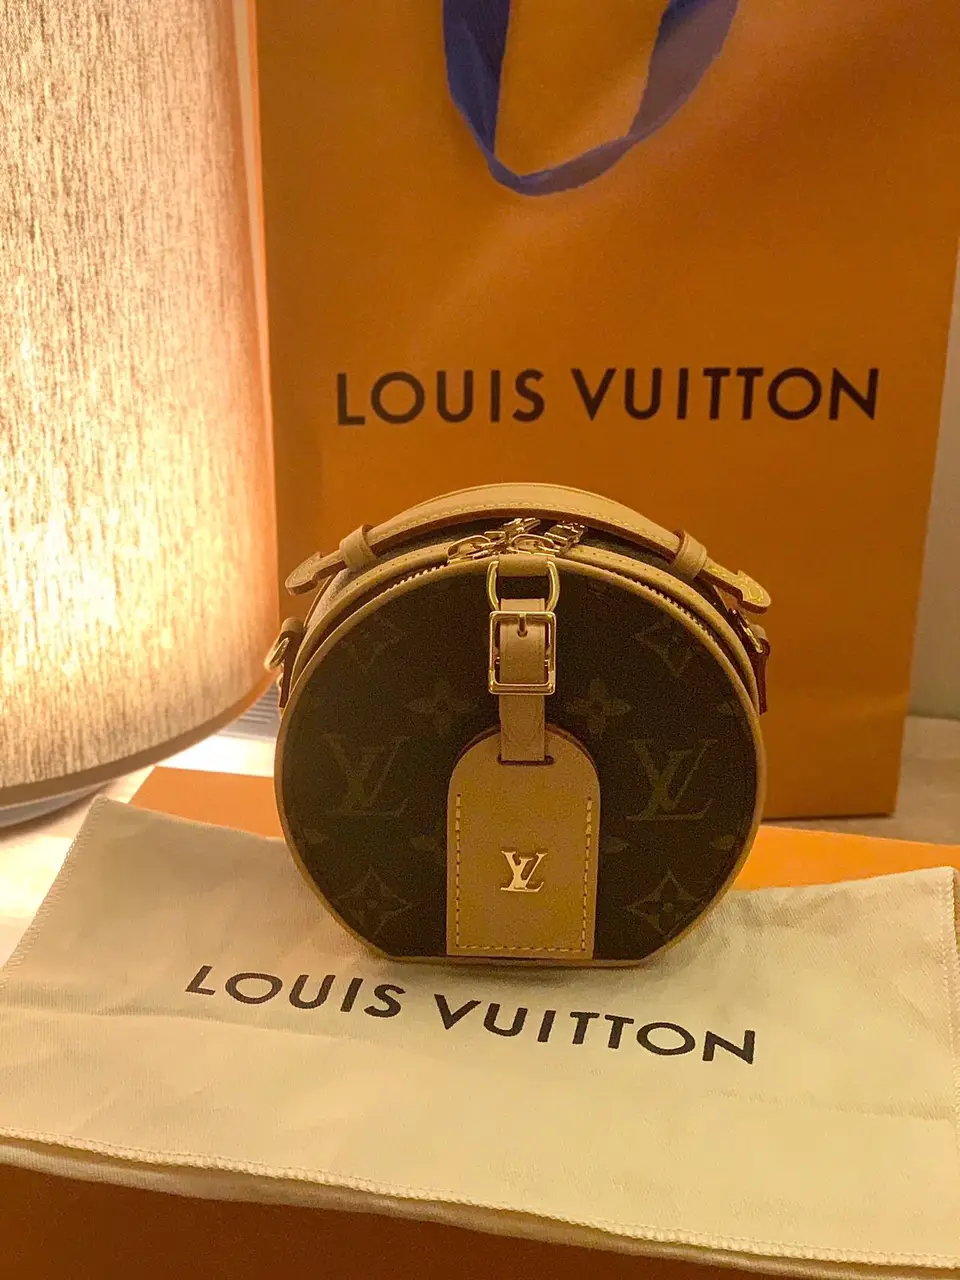 👜 My Mini LV Bag: A Joyful Purchase 🛍️, Galeri disiarkan oleh Chloe🦄